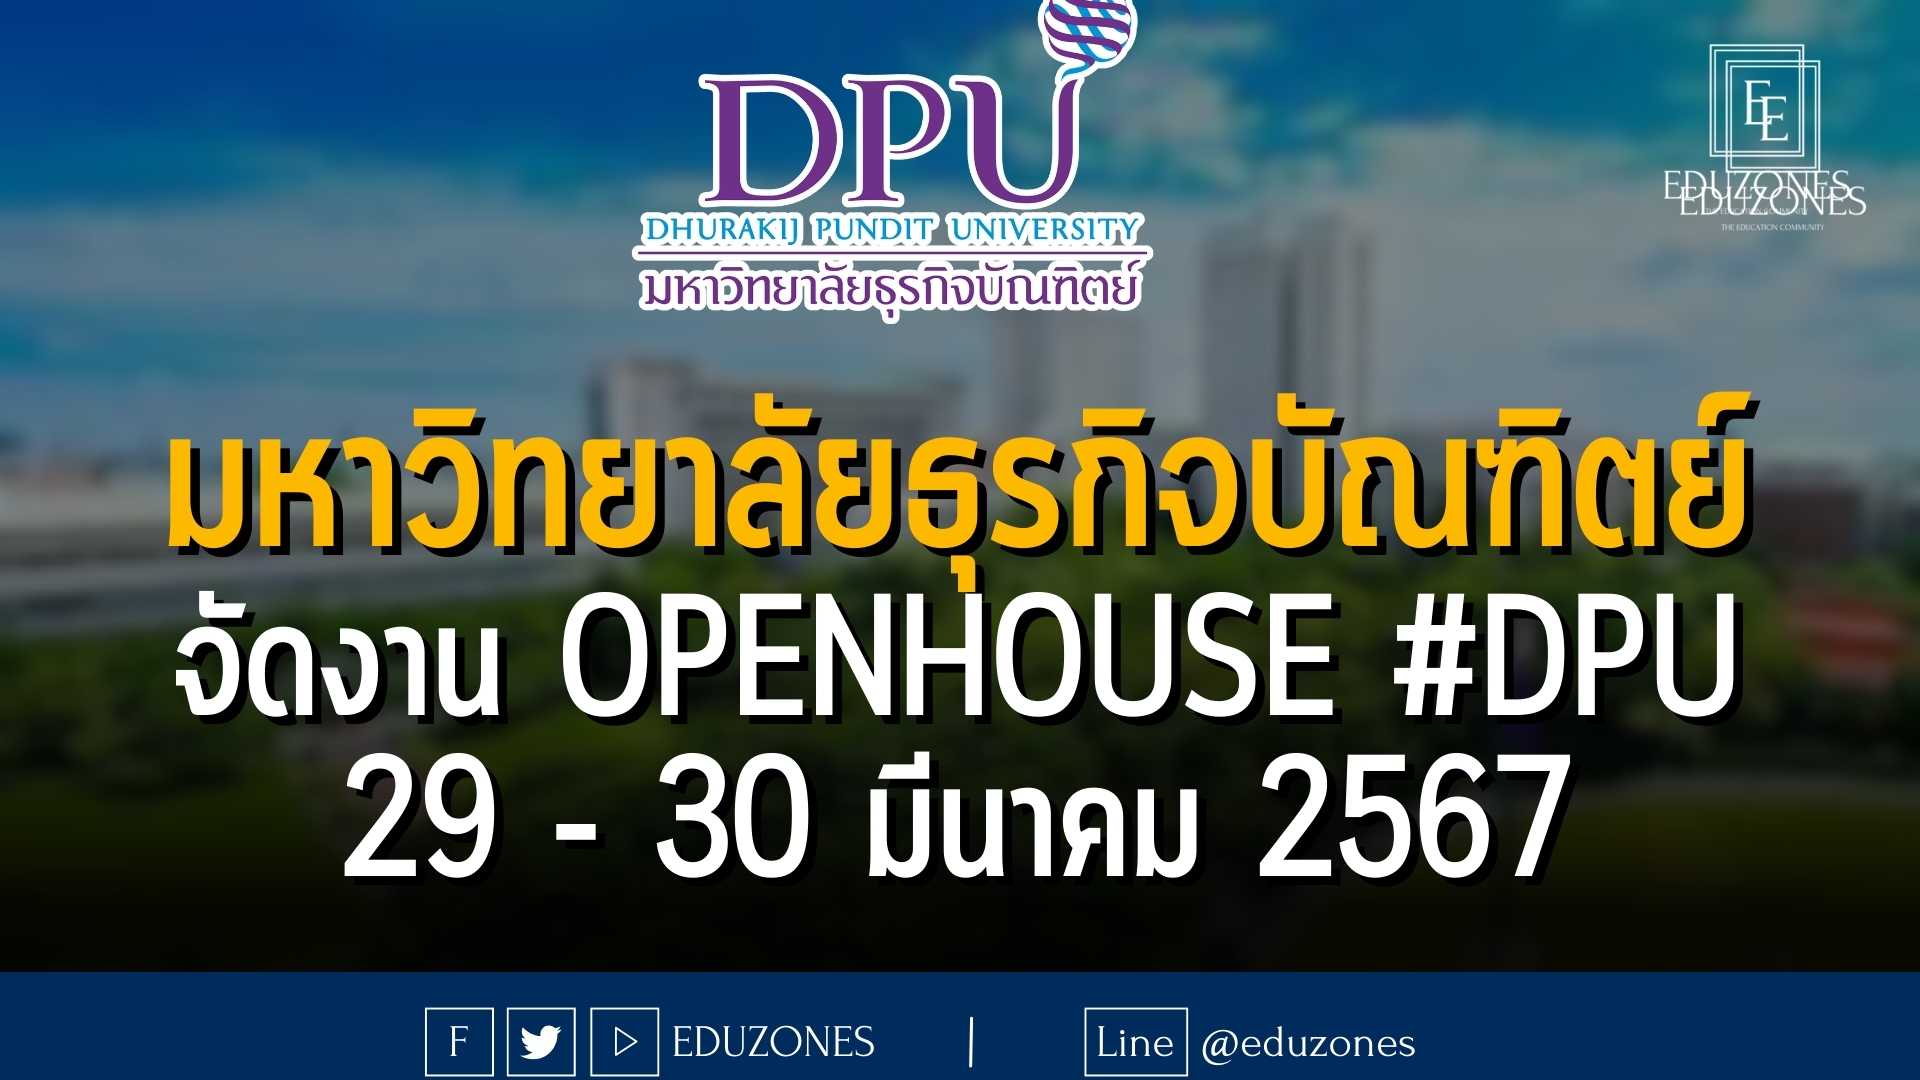 มหาวิทยาลัยธุรกิจบัณฑิตย์ จัดงาน OPENHOUSE #DPU #TCAS68 : 29 - 30 มีนาคม 2567